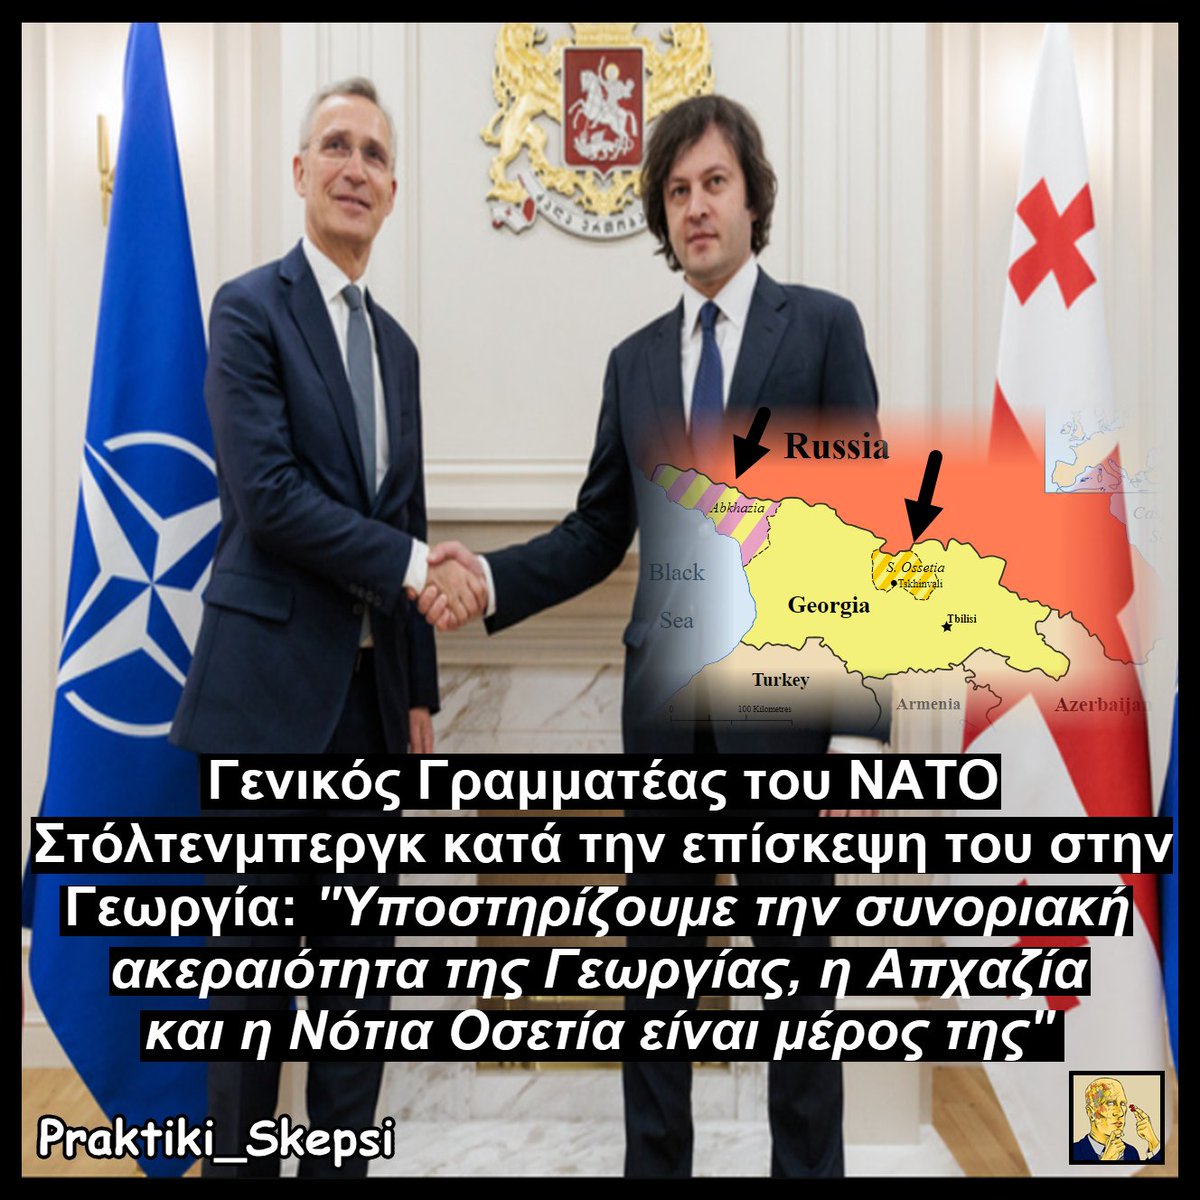 ‼️Σε συνέχεια της επίσκεψης του γενικού γραμματέα του ΝΑΤΟ Στόλτενμπεργκ στον Καύκασο, έγινε επίσκεψη και στην Γεωργία. Η Γεωργία είναι μια χώρα του Καυκάσου που έχει στραφεί προς την Ευρωπαϊκή Ένωση και το ΝΑΤΟ, θέλοντας να ενταχθεί στο Δυτικό στρατόπεδο. 

🇷🇺🇬🇪 Οι Γεωργιανοί